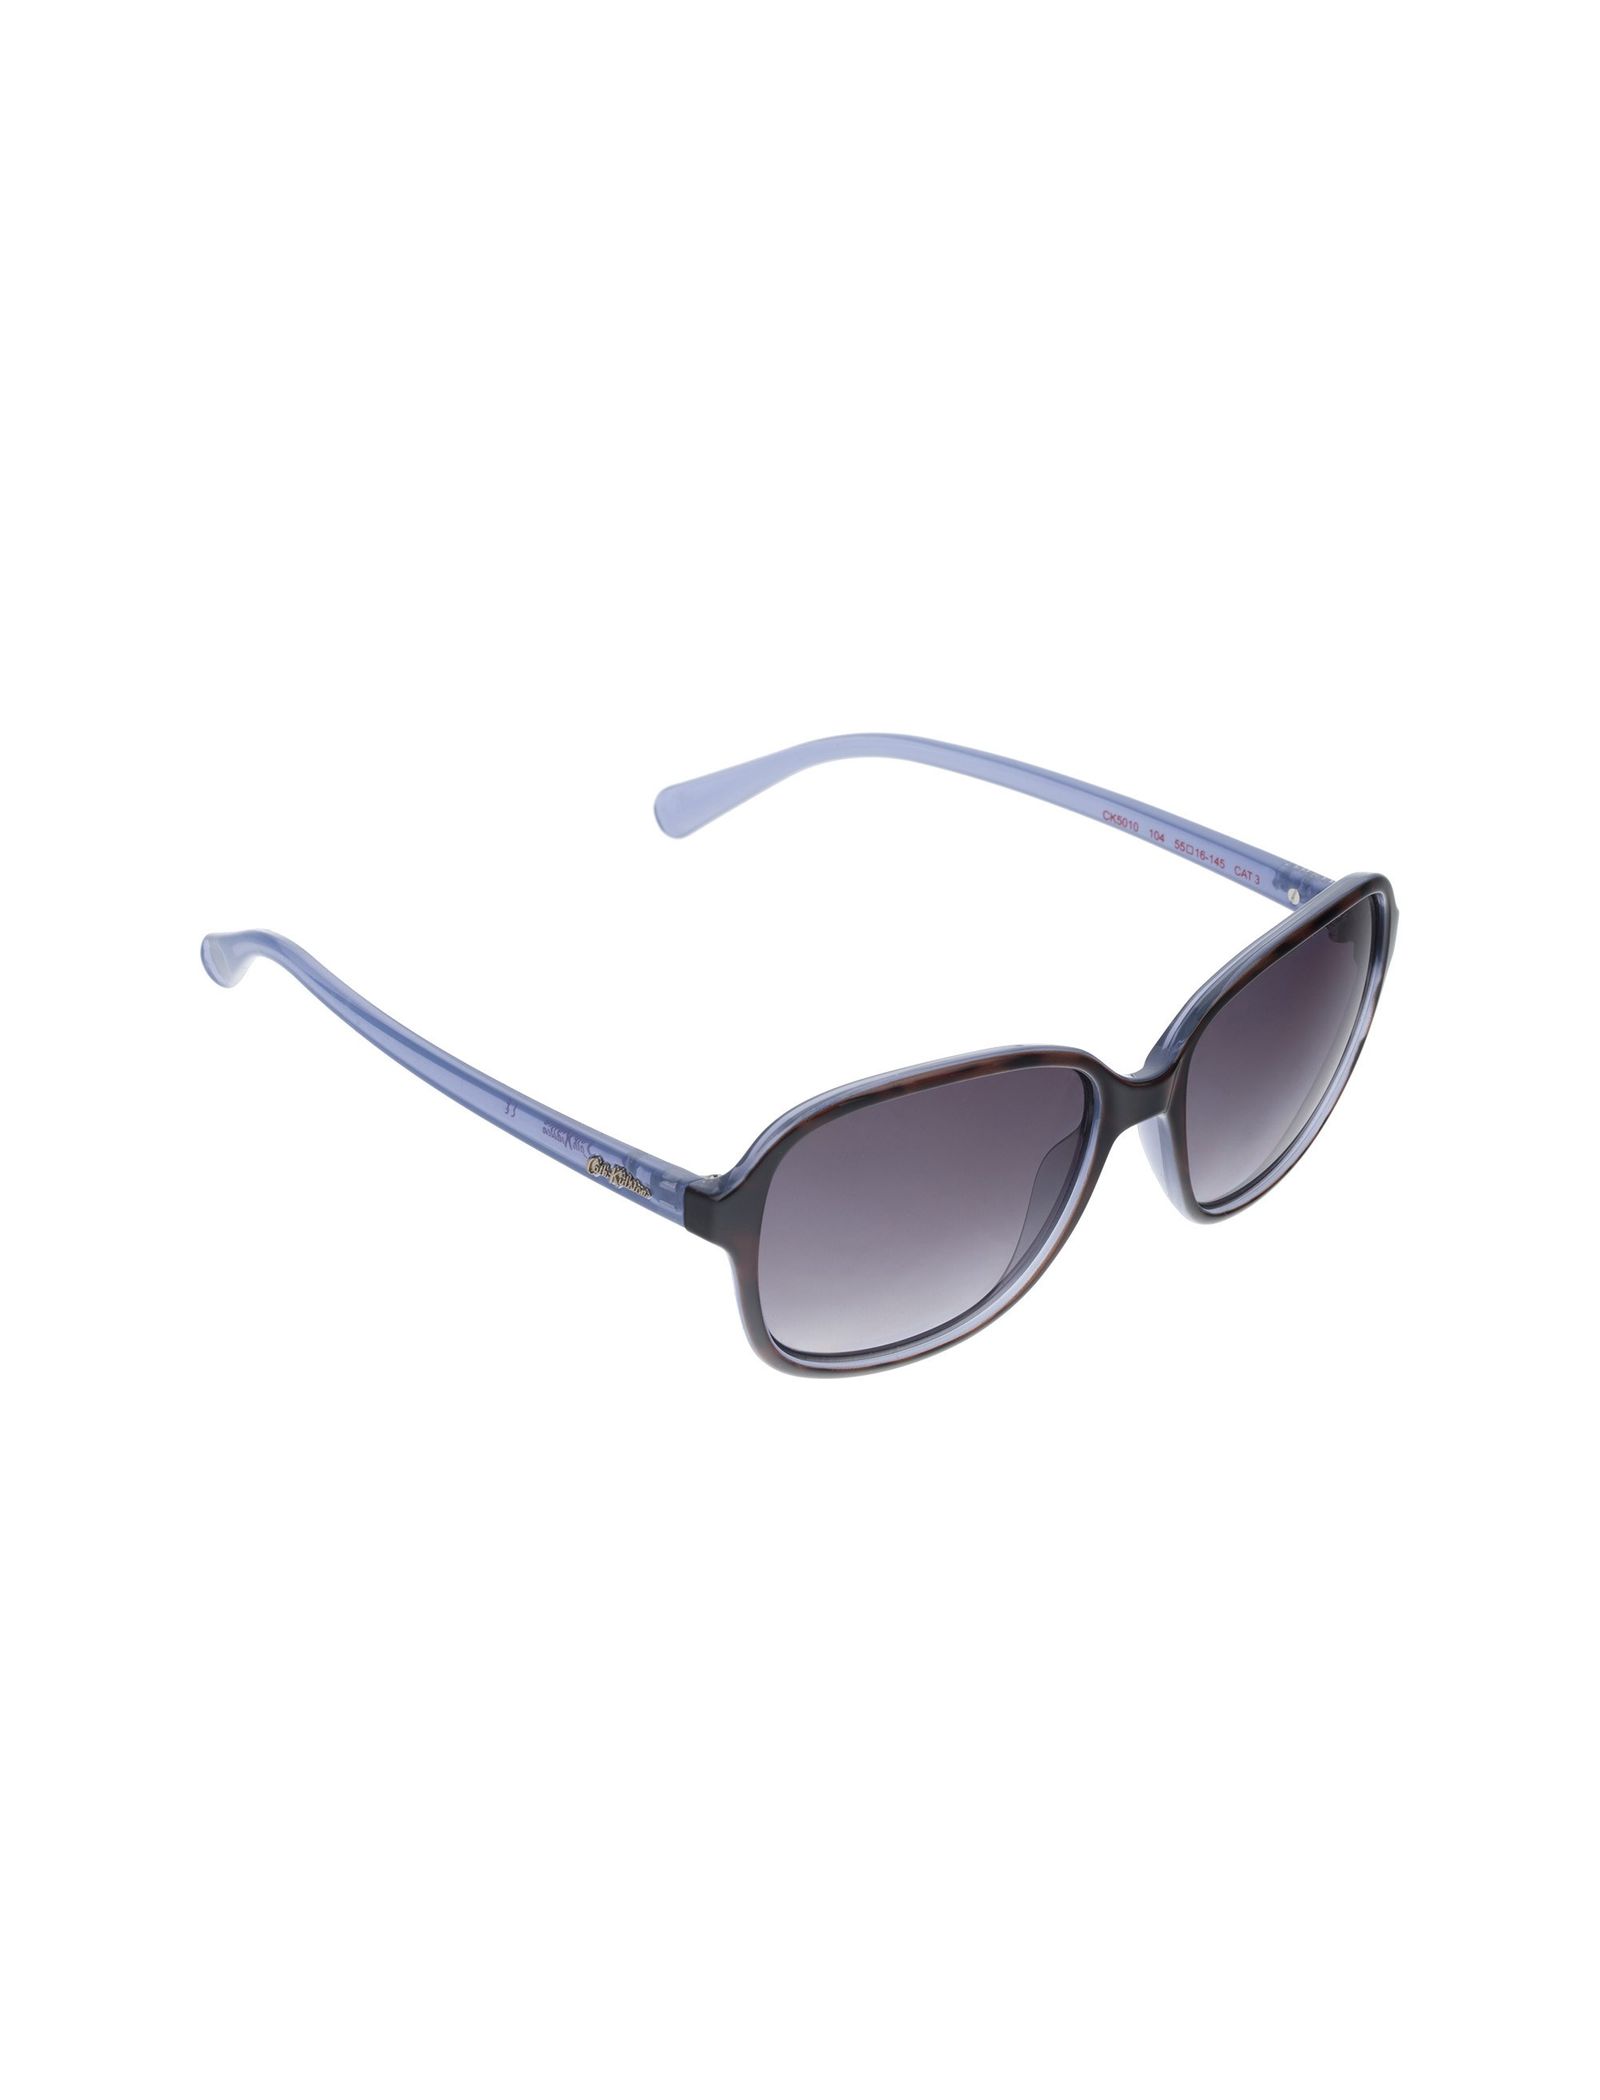 عینک آفتابی زنانه کت کیتسون مدل CK501010455 - قهوه ای و آبی - 3